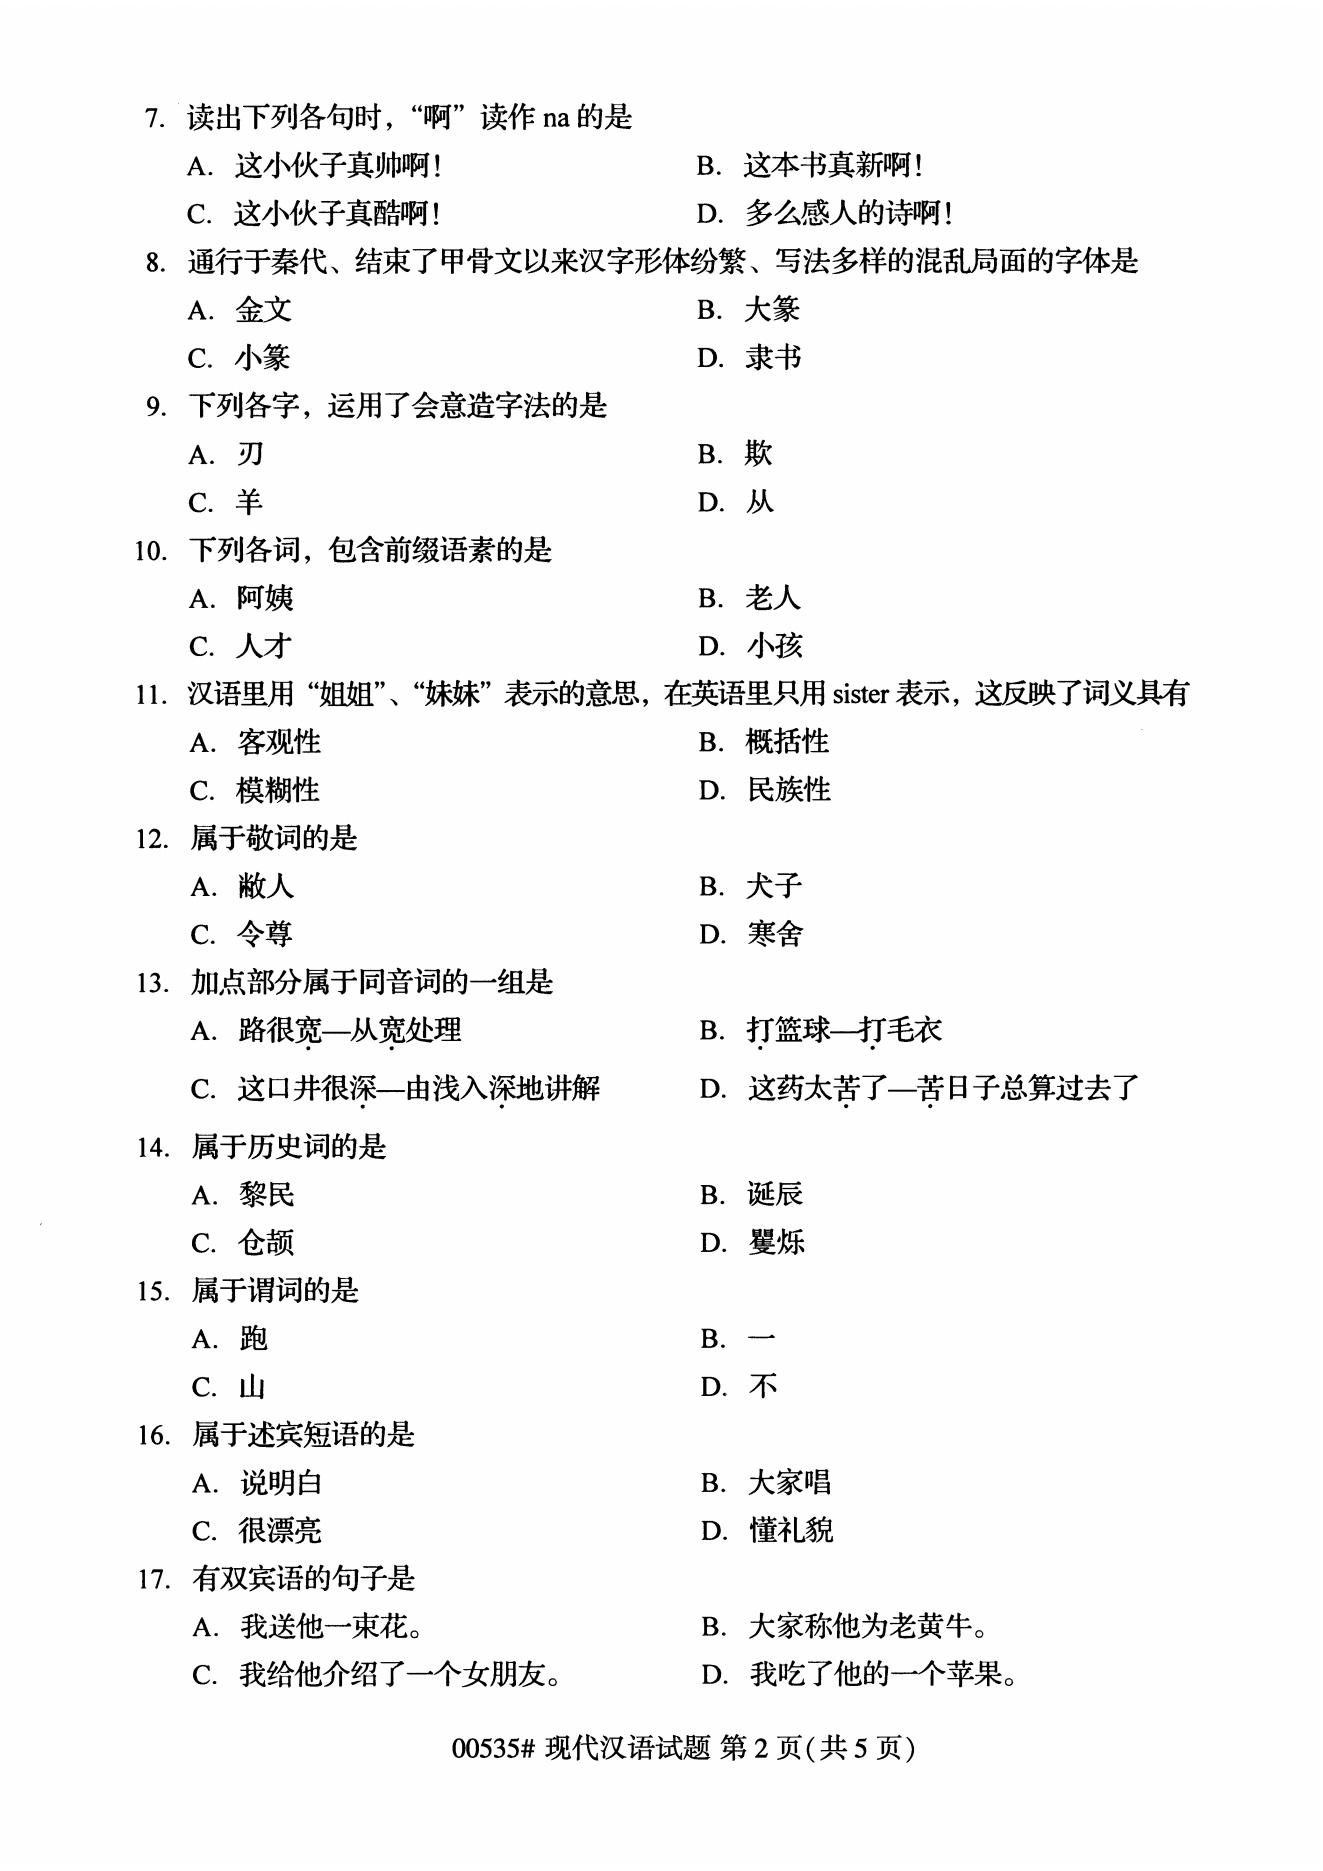 高等教育自学考试00535现代汉语历年真题及答案插图1